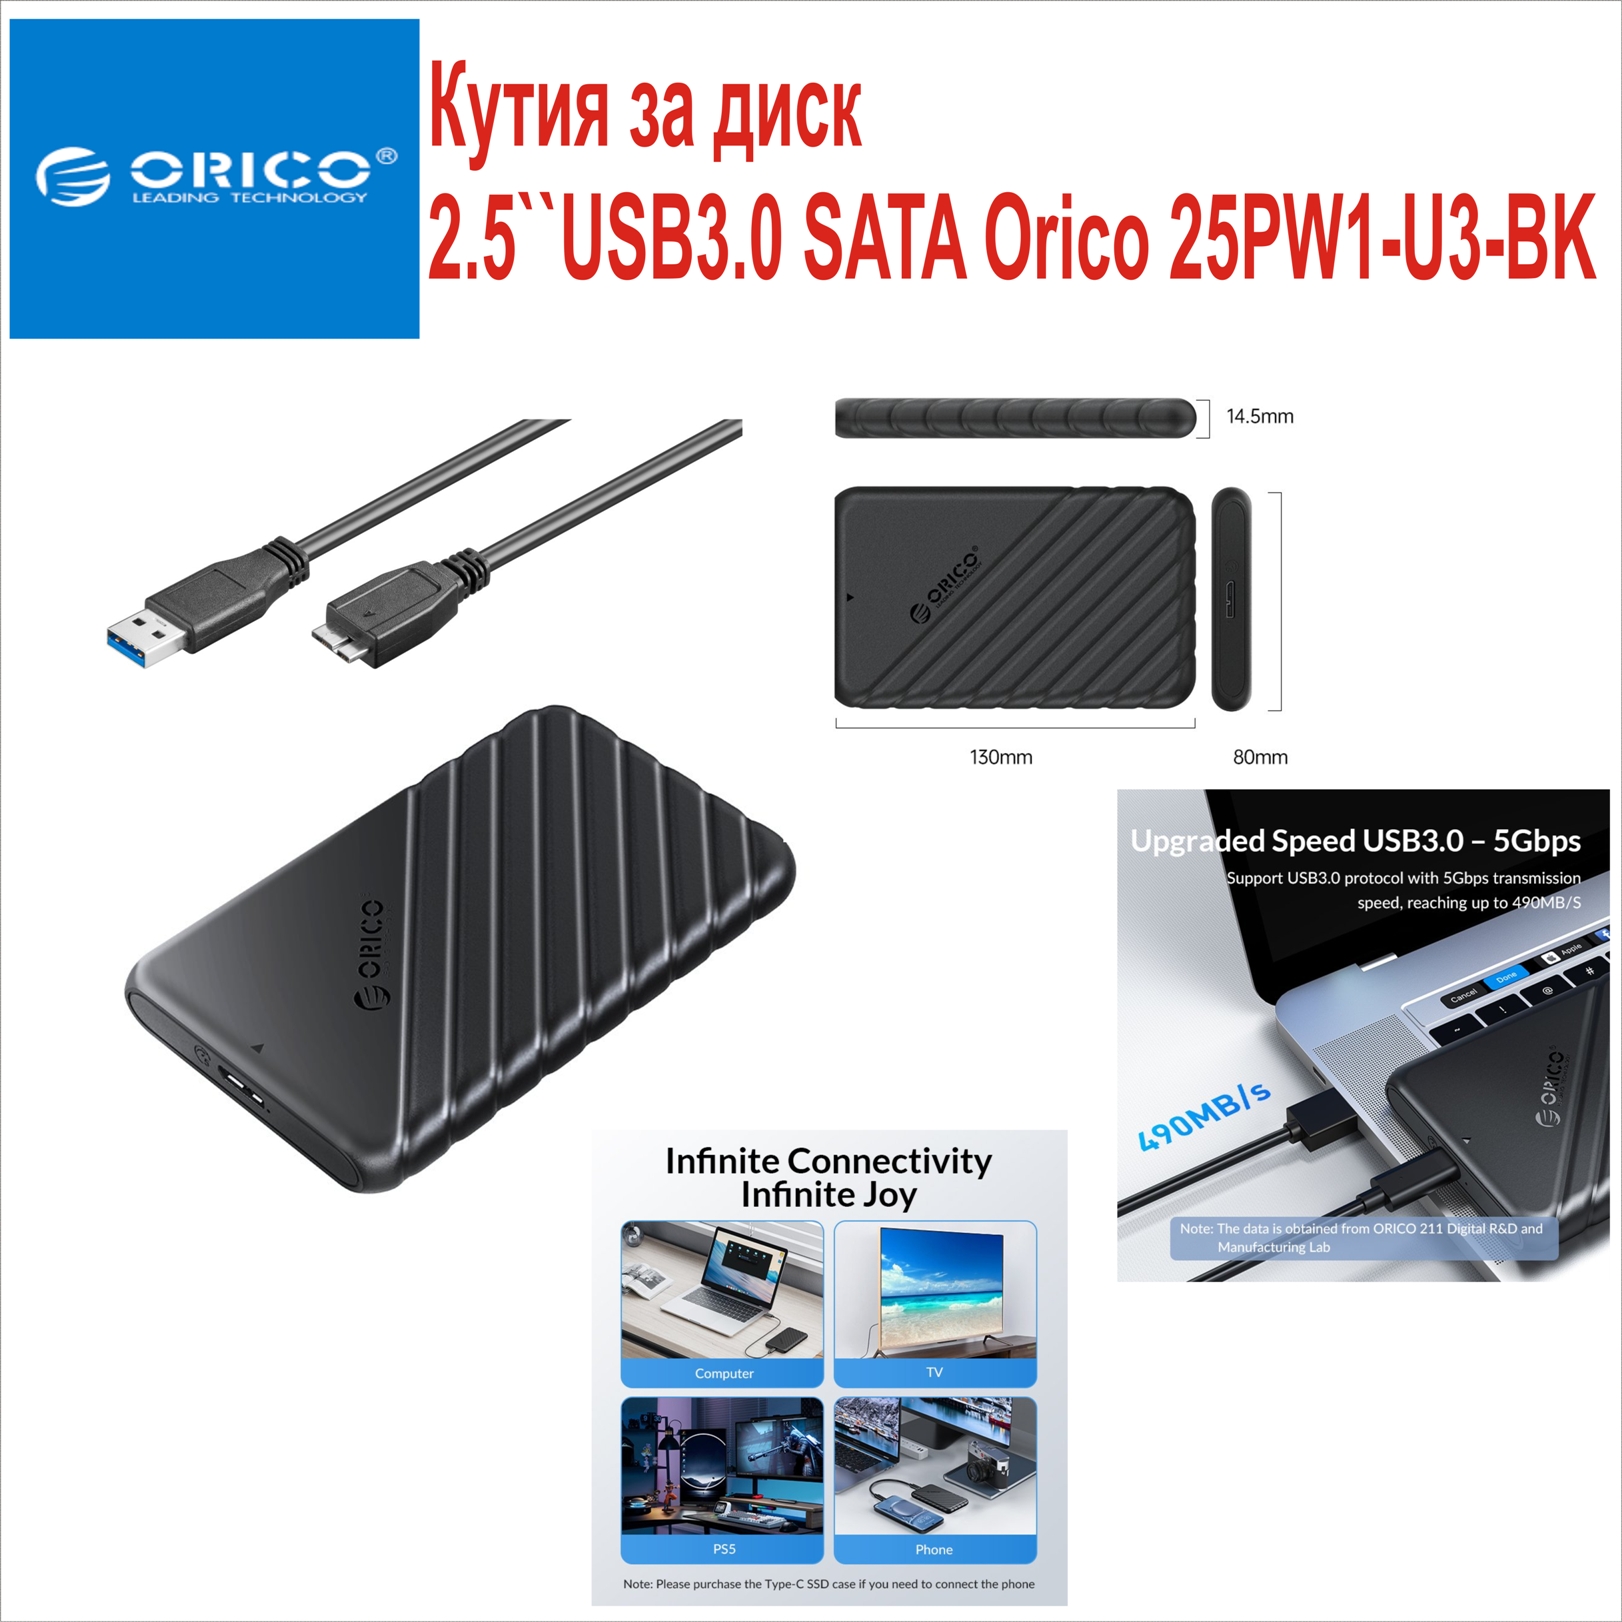 Кутия за диск 2.5``USB3.0 SATA Orico 25PW1-U3-BK